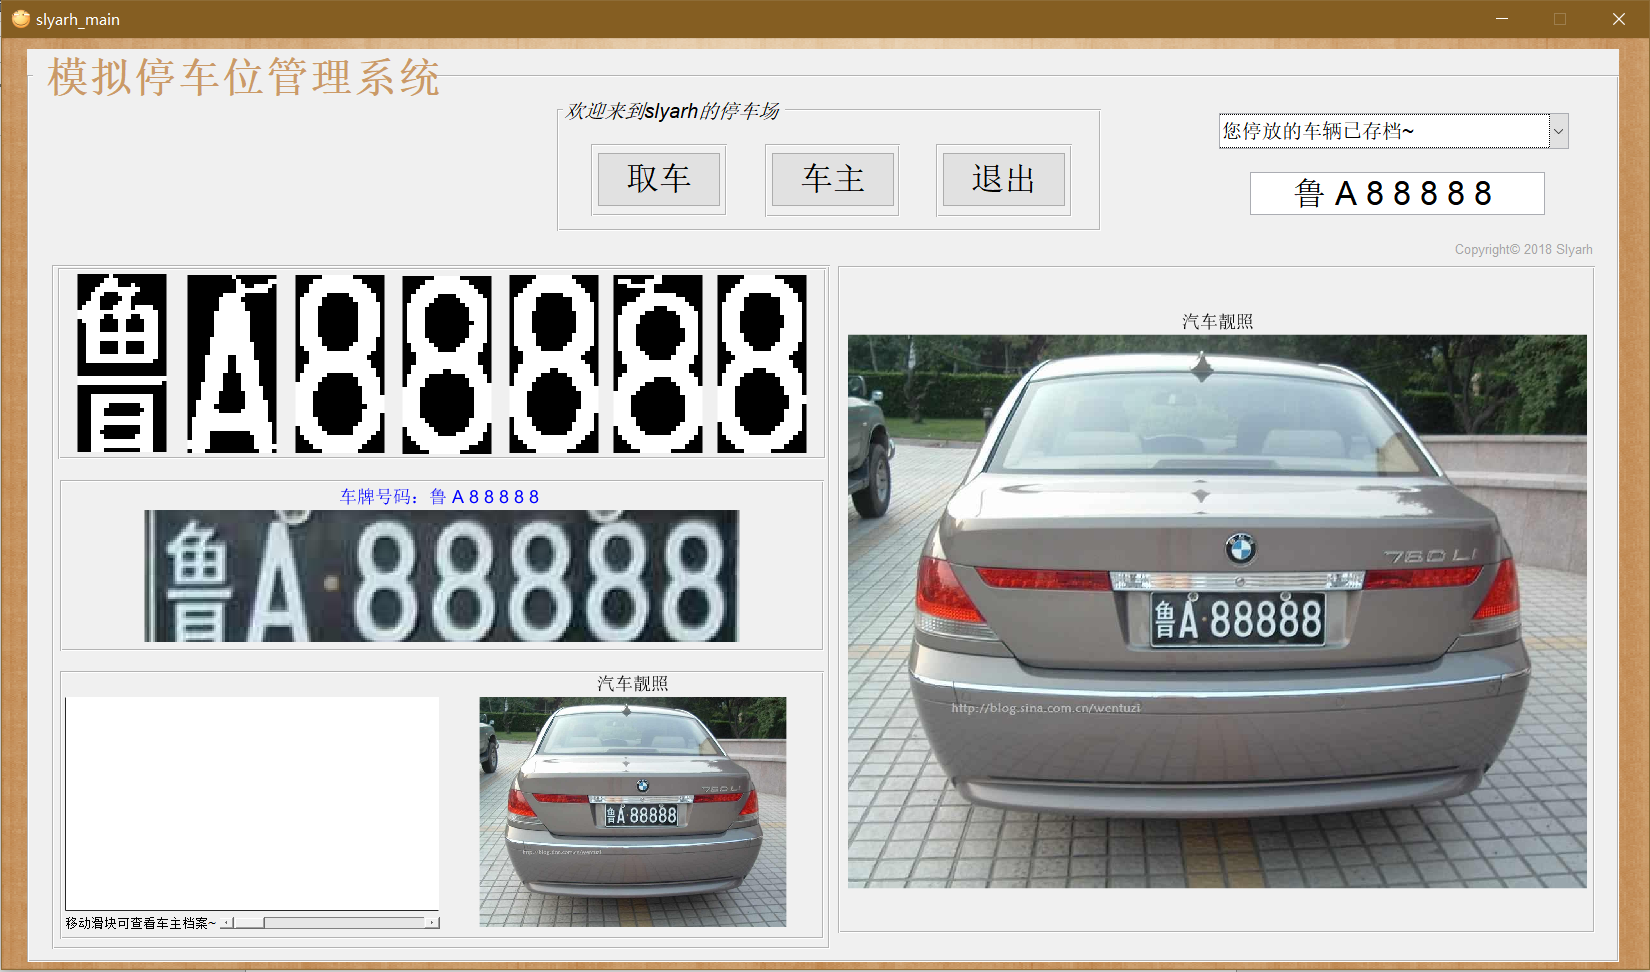 【B371】基于Matlab模拟停车位管理系统(车牌识别+人脸定位)